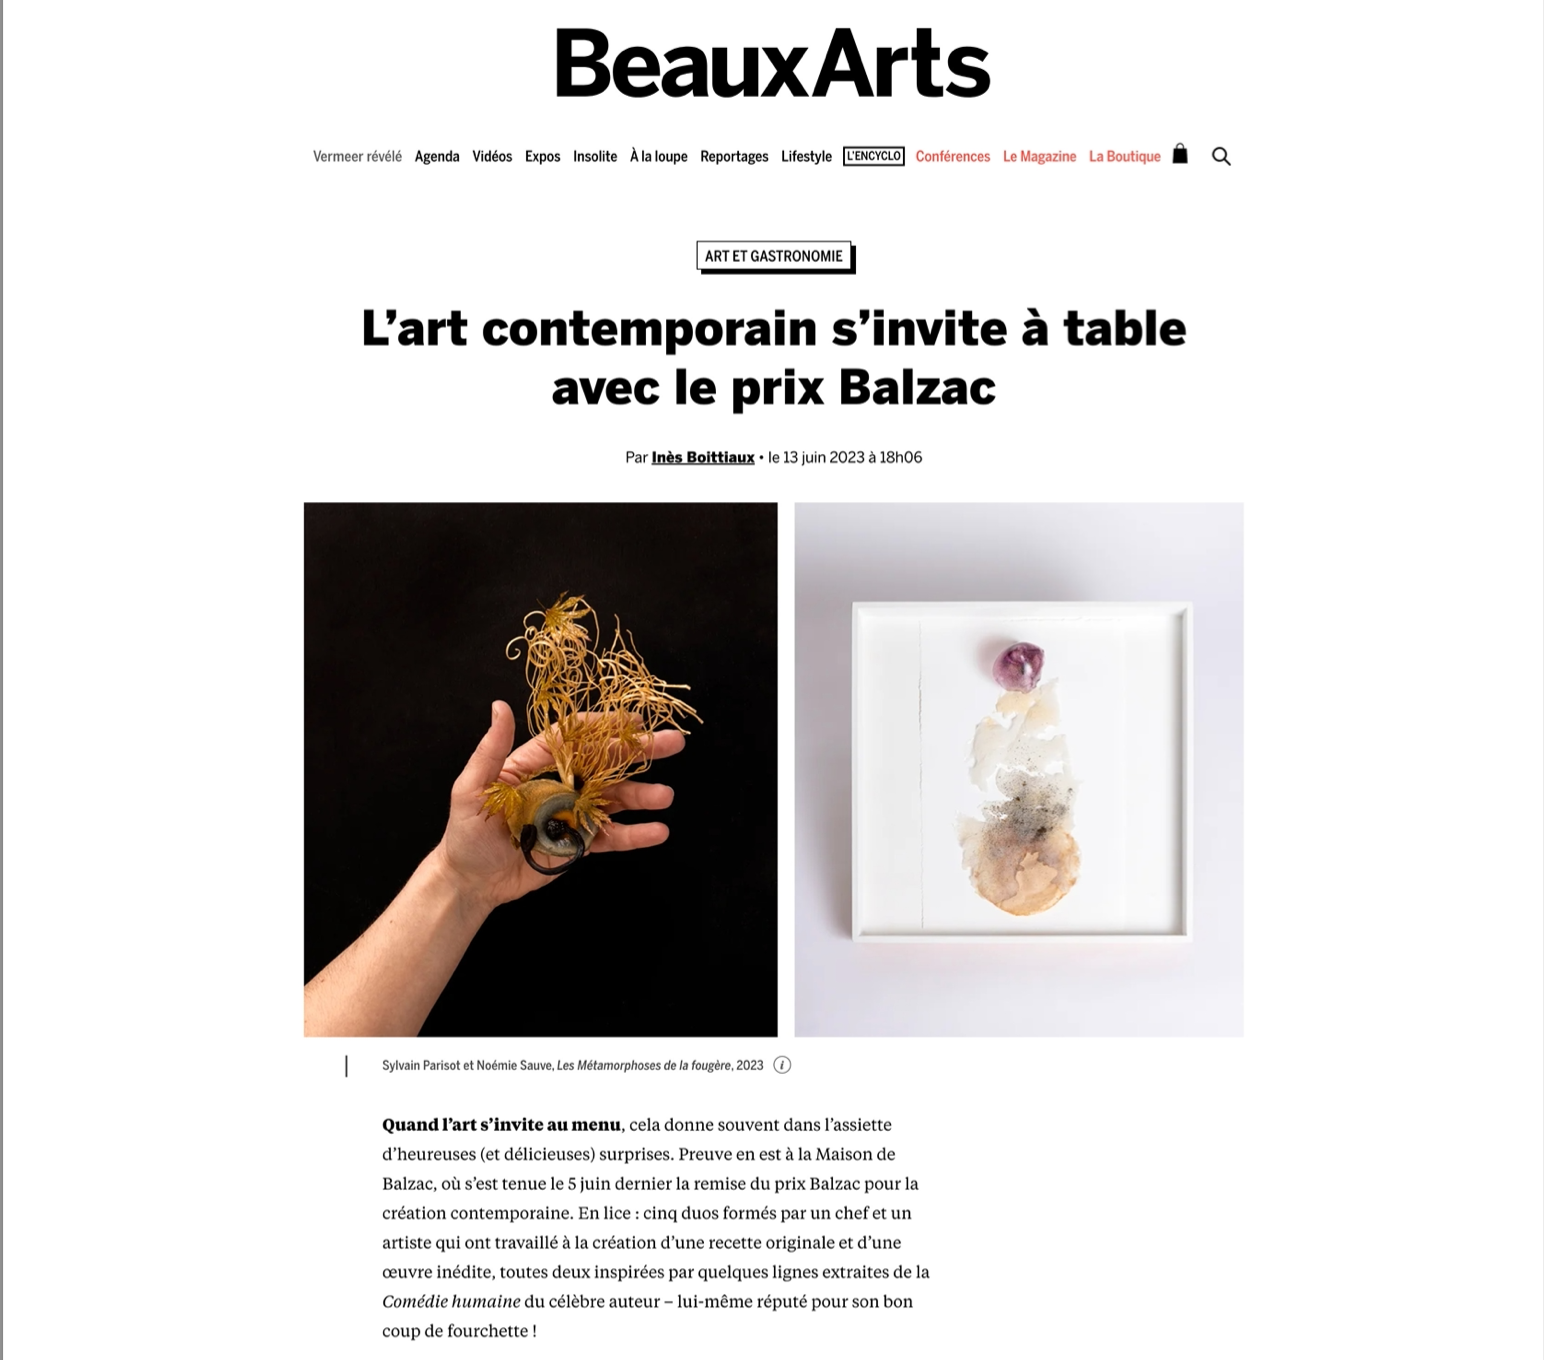 Beaux-Arts Magazine 13 juin 2023 par Inès Boittiaux.png